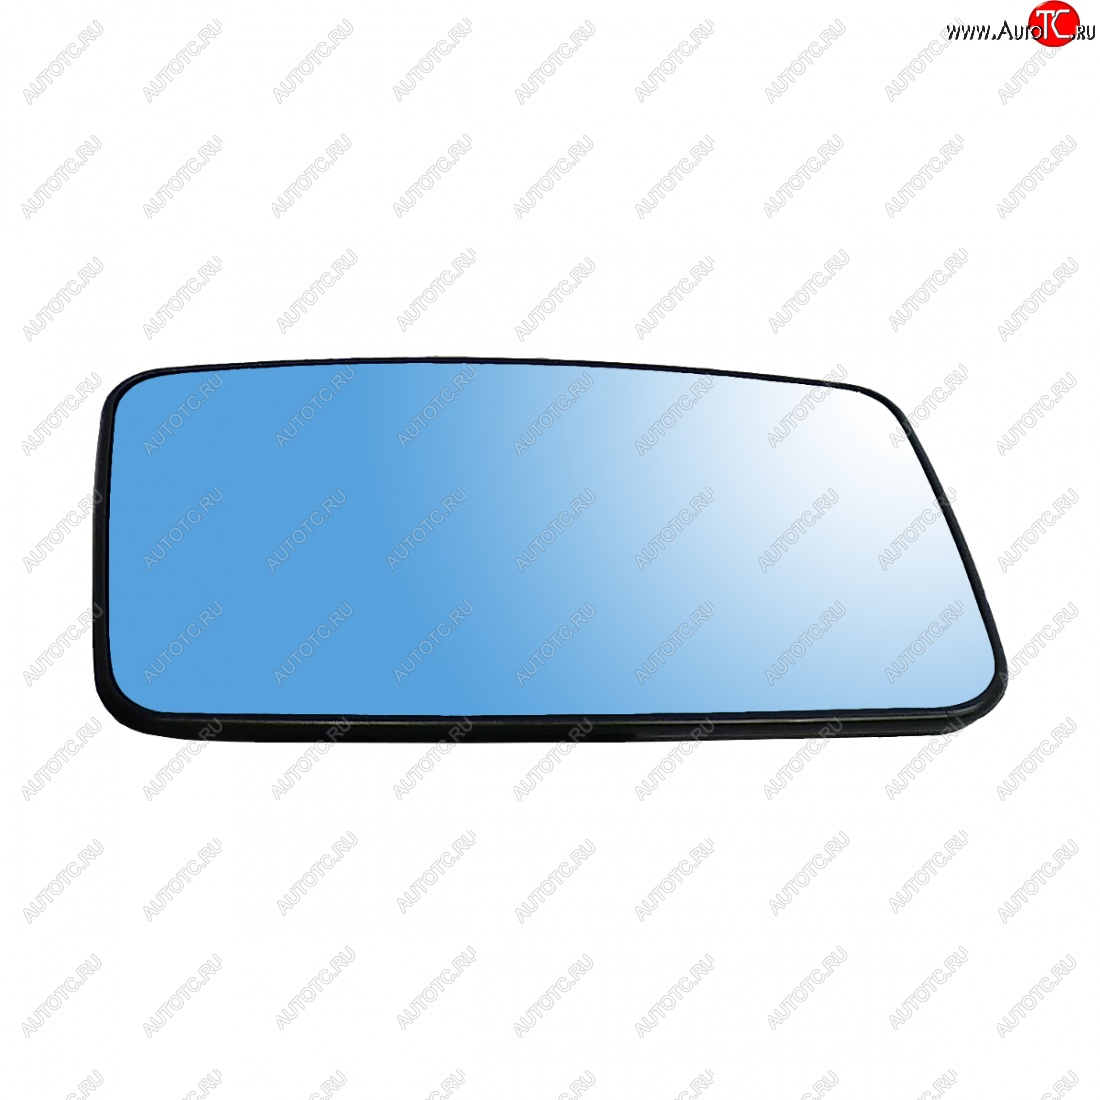 279 р. Правый зеркальный элемент (в корпус Автокомпонент) AutoBlik2  Лада Приора ( 2170 седан,  2171 универсал,  2172 хэтчбек,  21728 купе) (2007-2014) (с антибликовым покрытием)